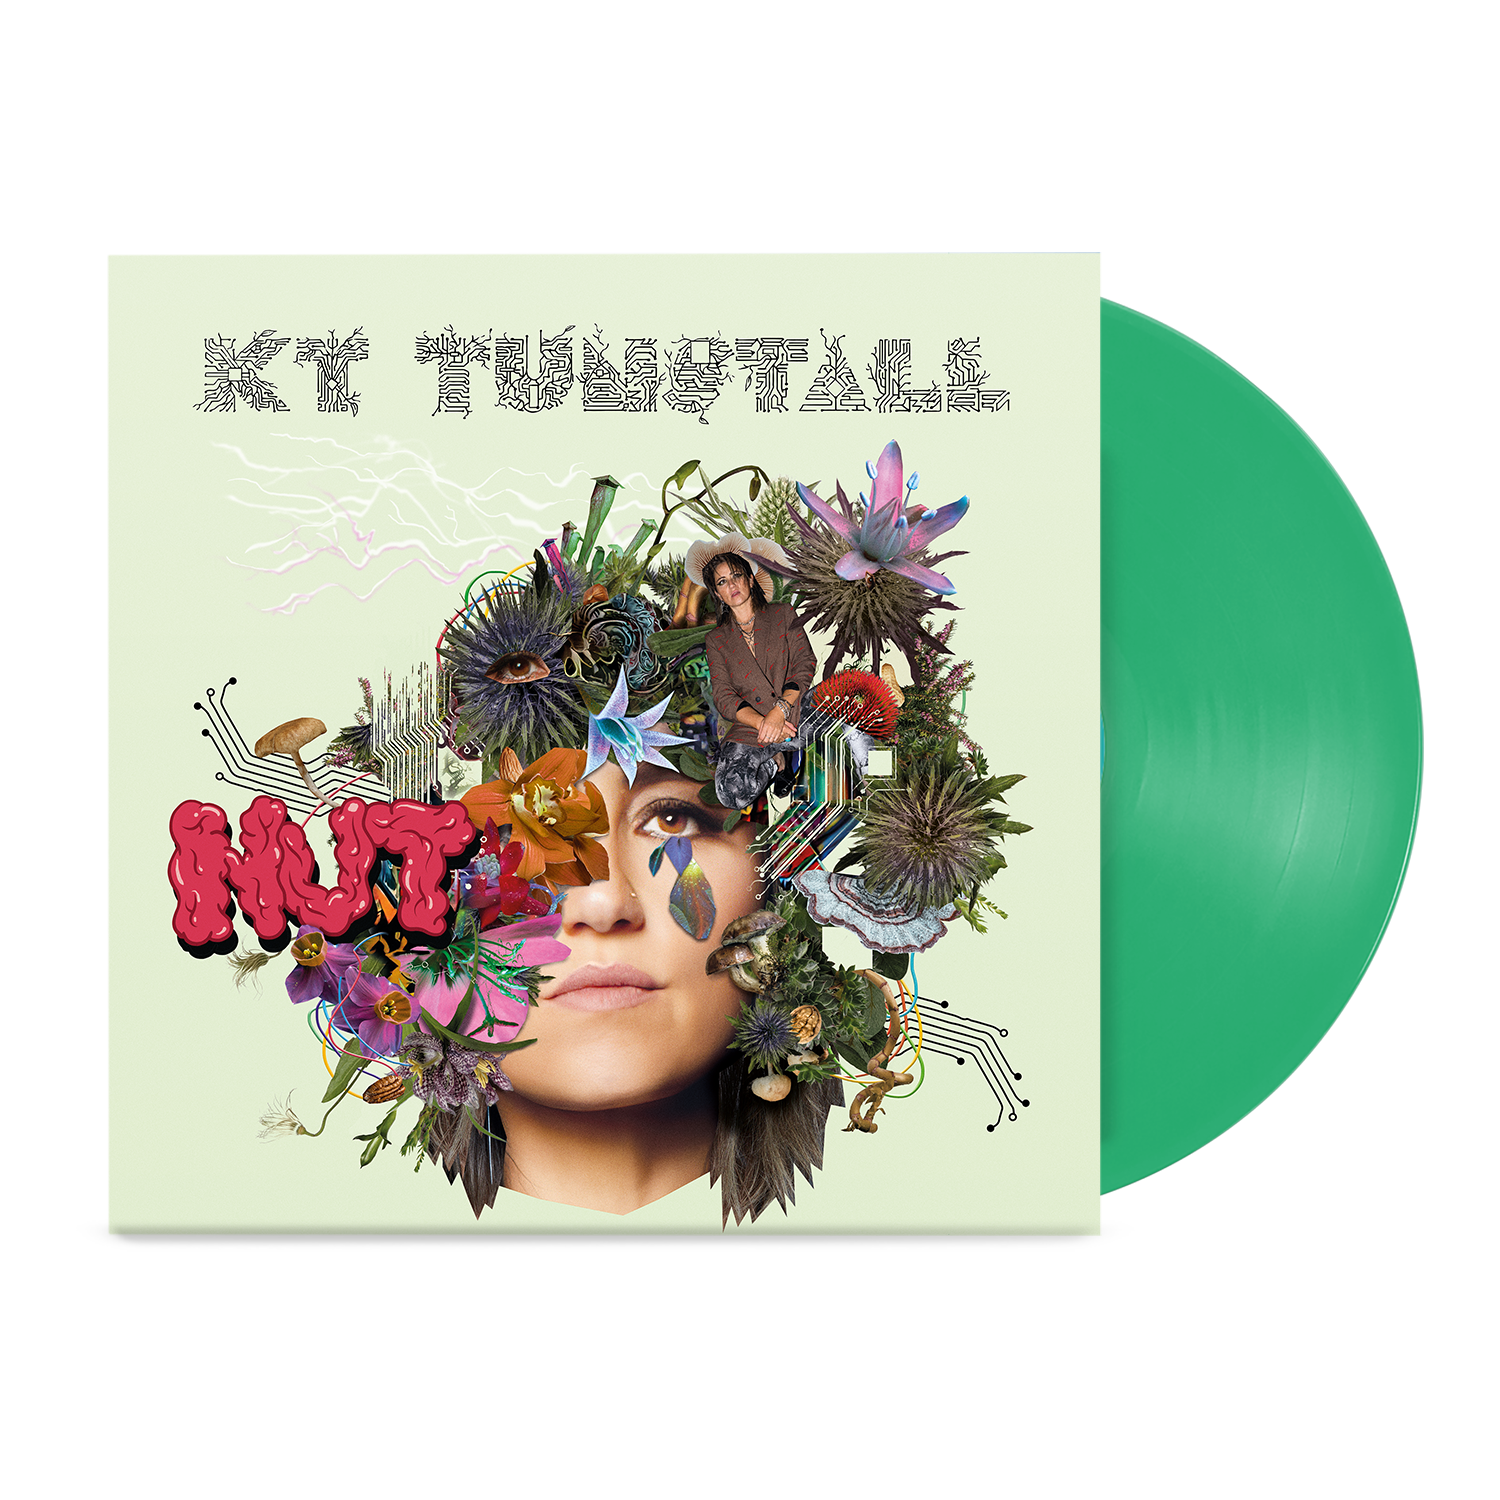 KT Tunstall - Nut (Limited Edition Green Vinyl)